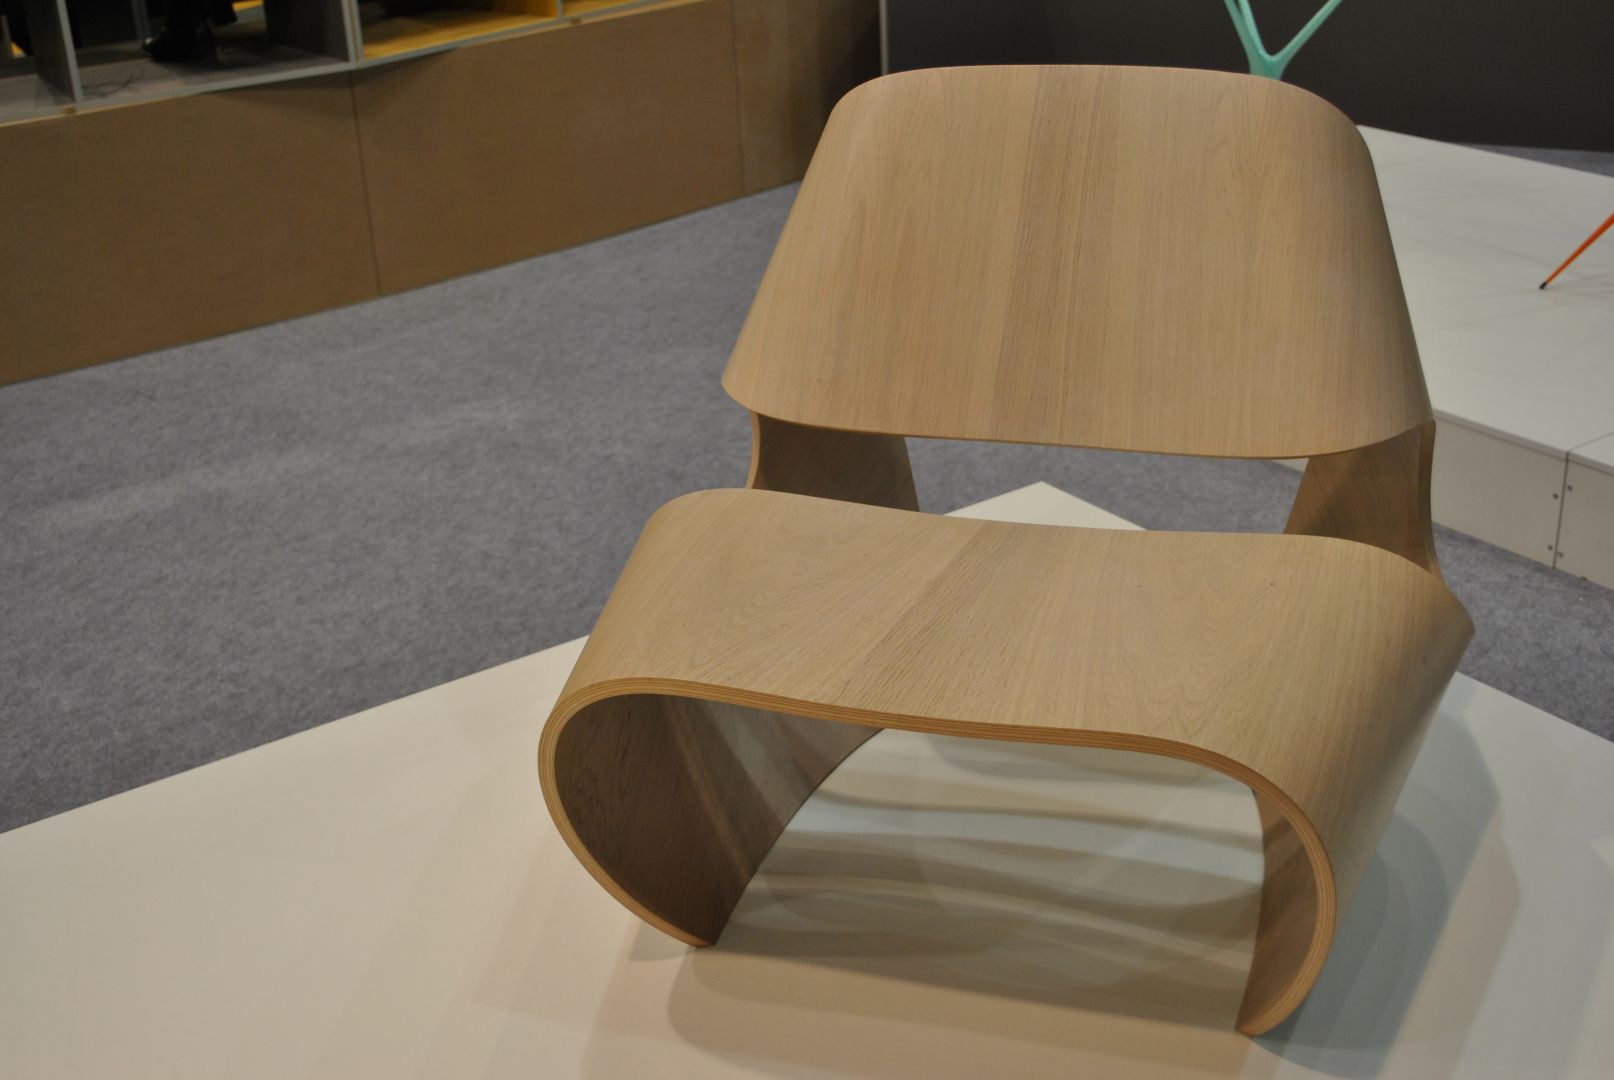 Krzesło Cowrie, o formie wszystko w jednym, zaprojektowane przez Brodiego Neilla dla firmy Made in Ratio.
Fot. Piotr Sawczuk